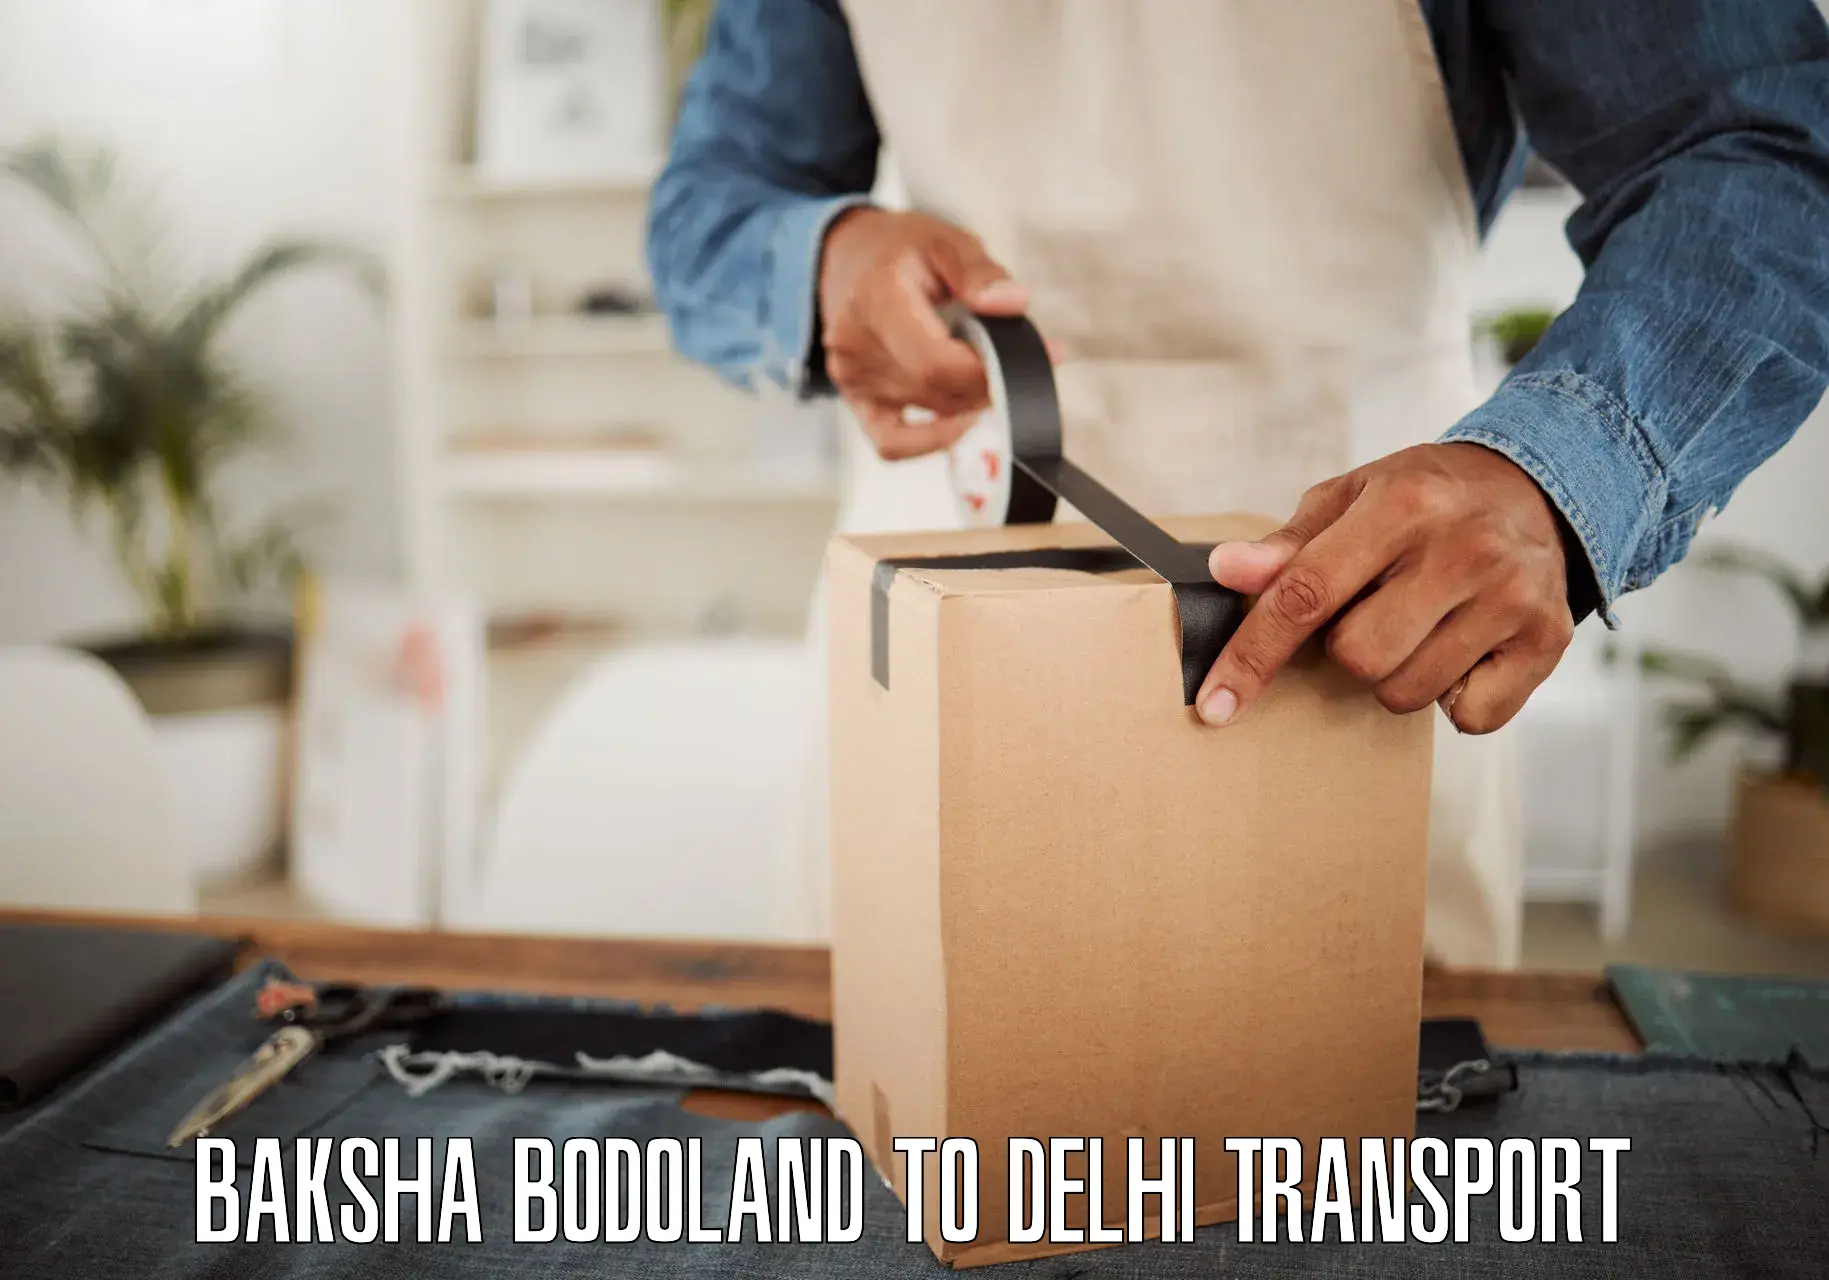 Transport services Baksha Bodoland to Guru Gobind Singh Indraprastha University New Delhi